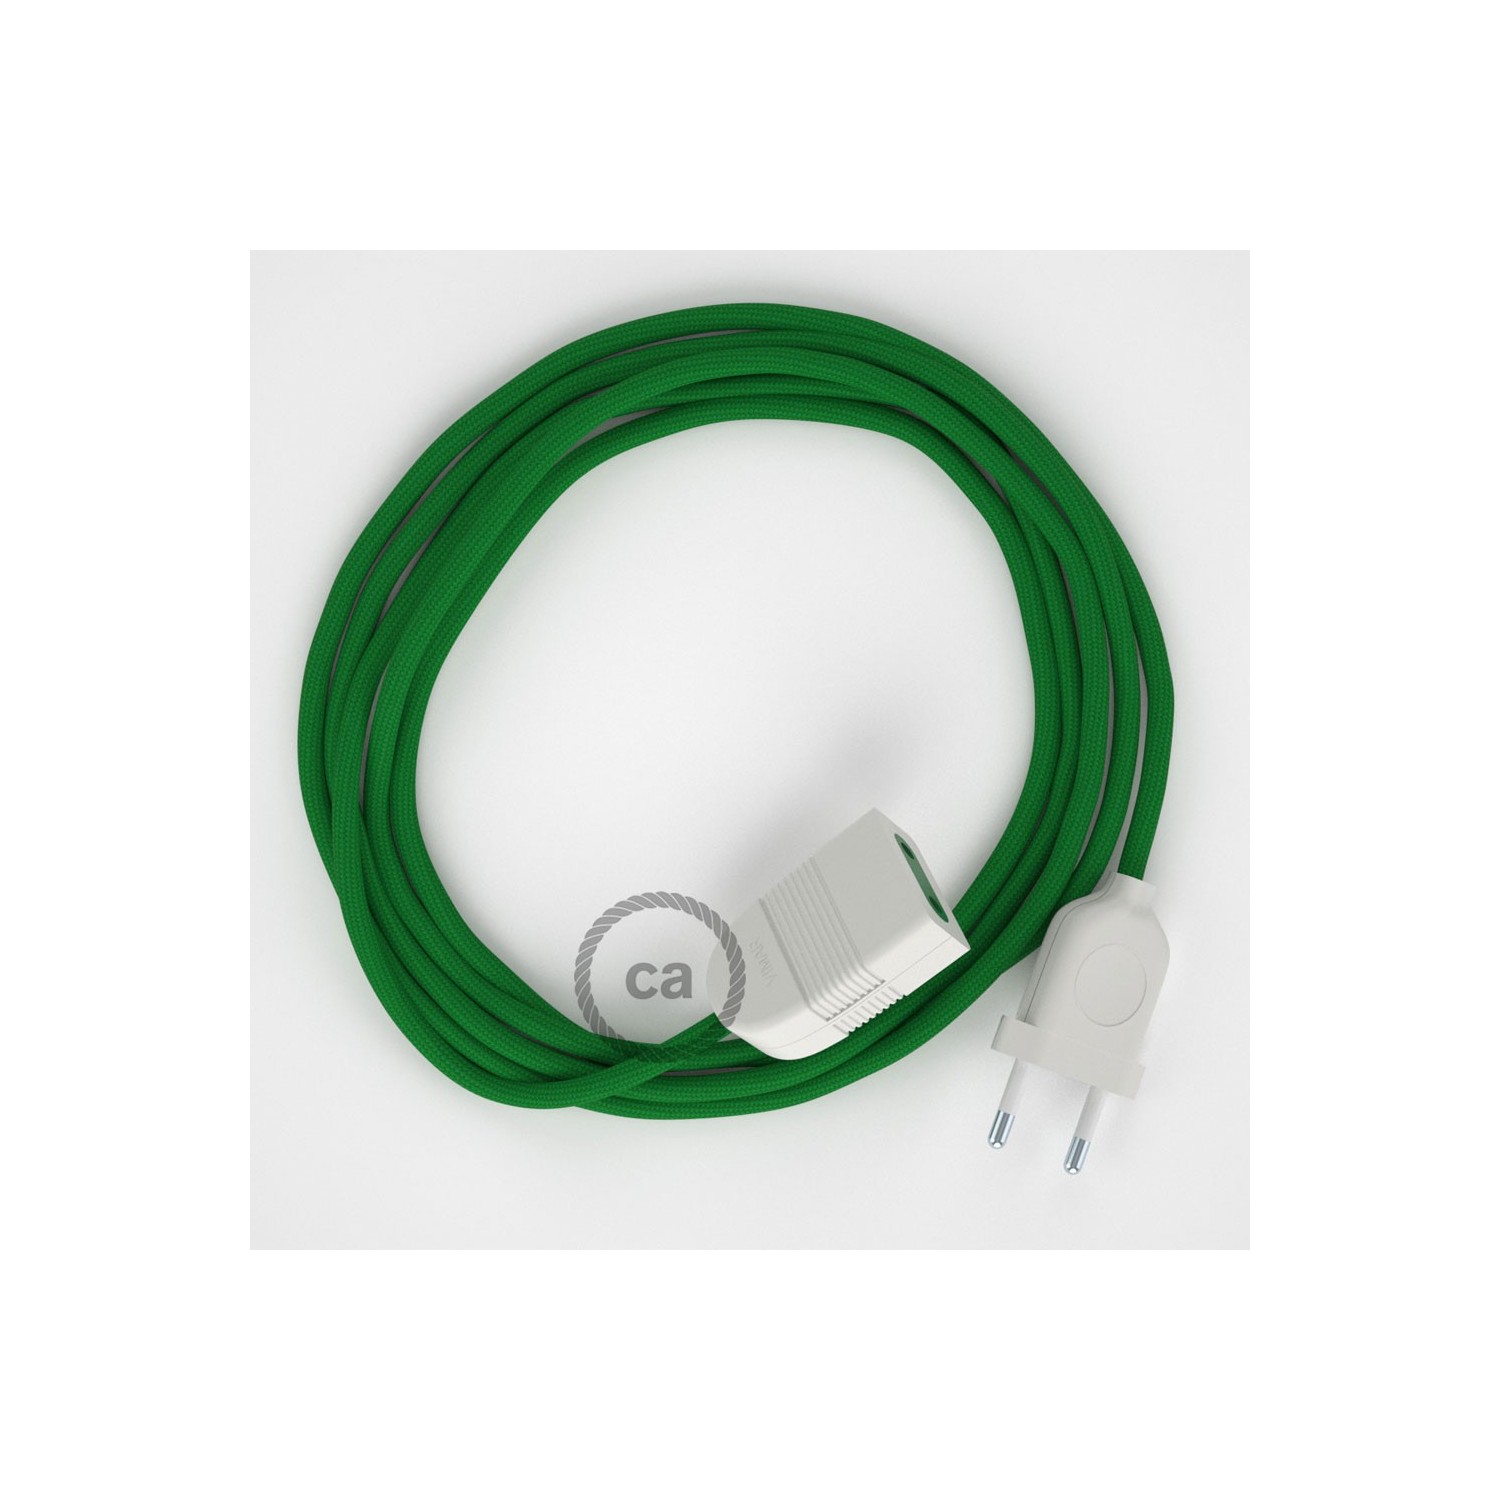 Rallonge électrique avec câble textile RM06 Effet Soie Vert 2P 10A Made in Italy.